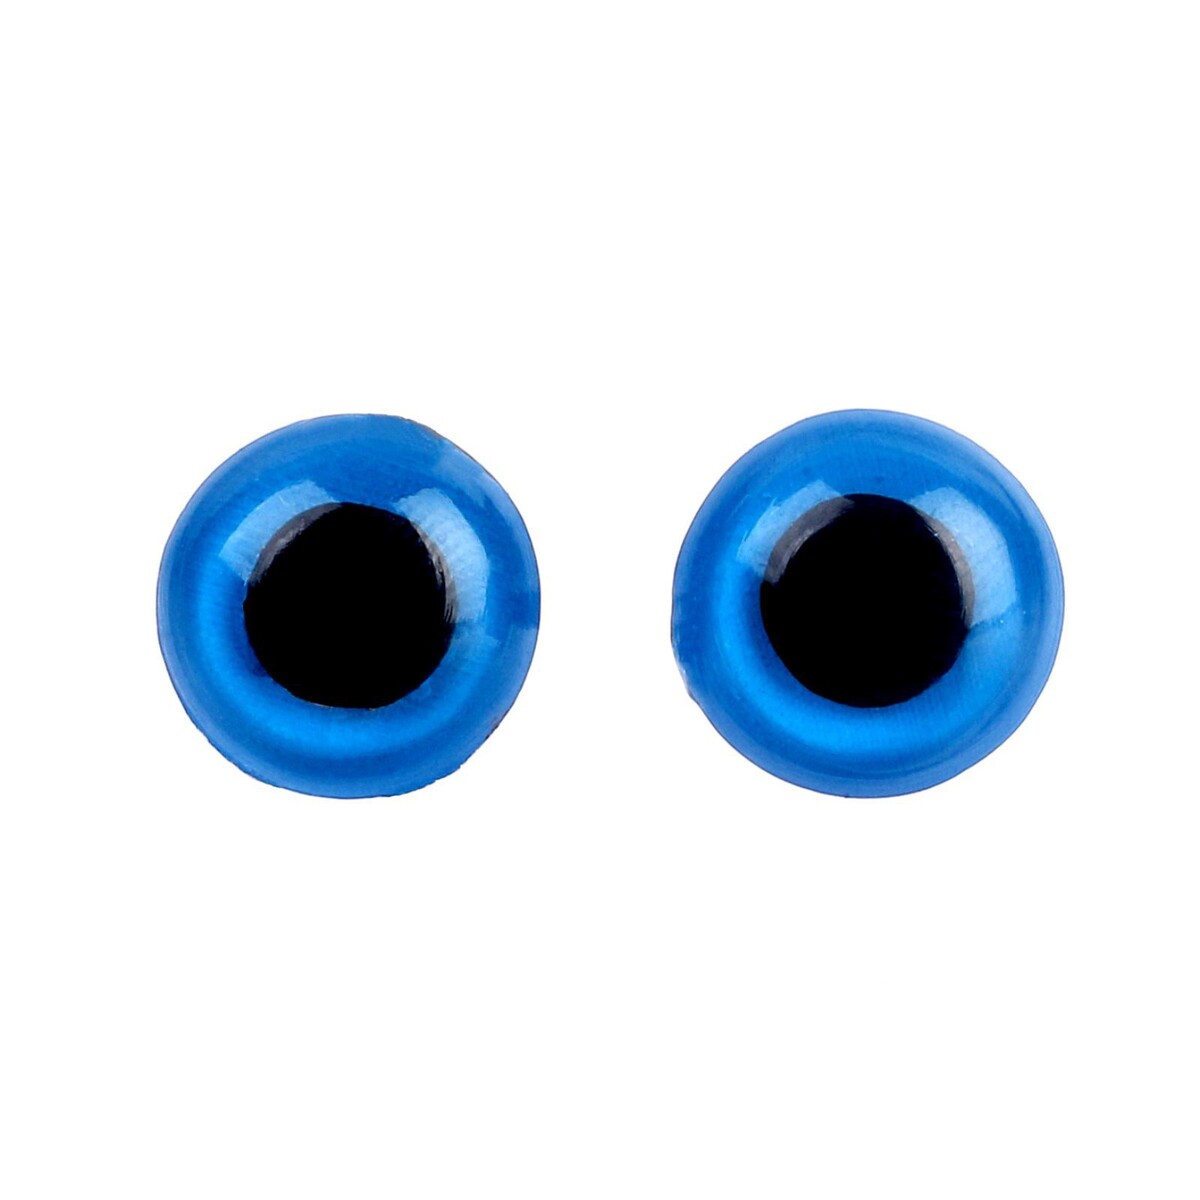 Глаза винтовые с заглушками, полупрозрачные, набор 4 шт, цвет голубой, размер 1 шт: 1×1 см глаза винтовые с заглушками набор 4 шт размер 1 шт 1 7×1 5 см